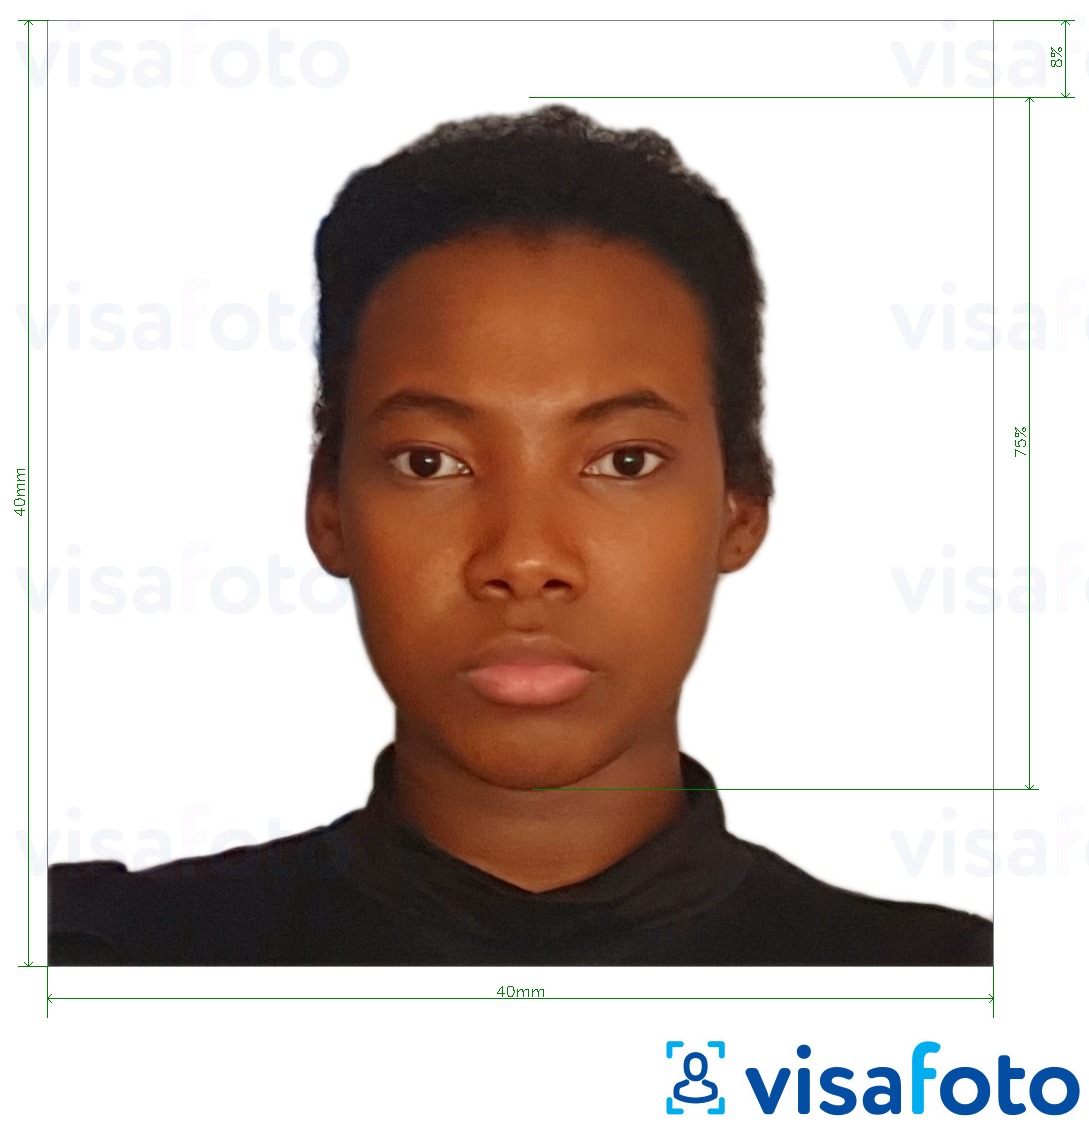 Exemples sur des photos pour Visa du Cameroun 4x4 cm (40x40 mm) avec les spécifications de taille exactes